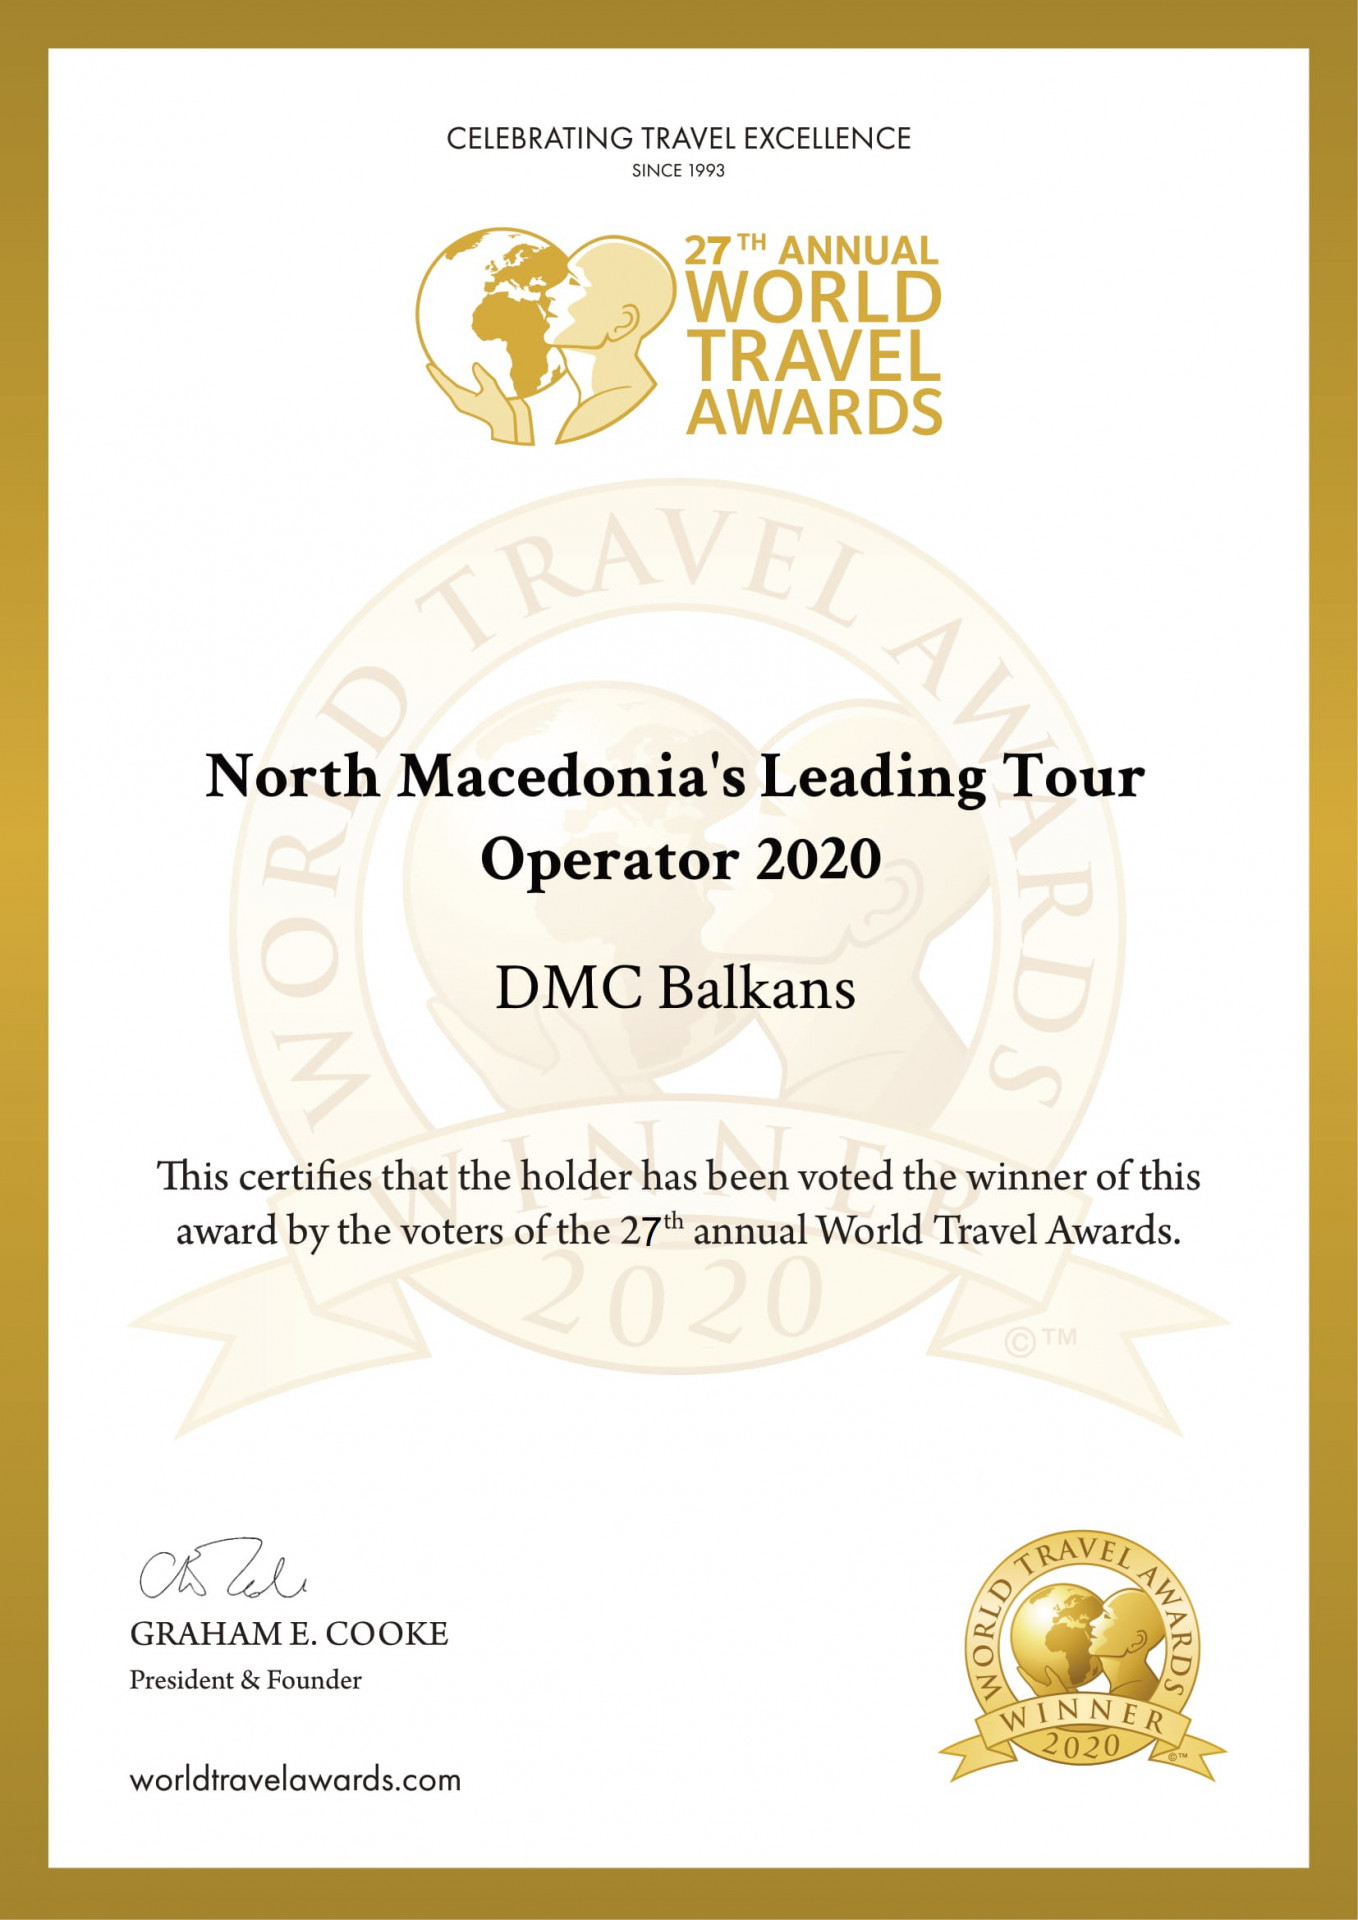 DMC Balkans Travel & Events три рази поспіль стає найкращий туроператор в’їзного туризму для Македонії